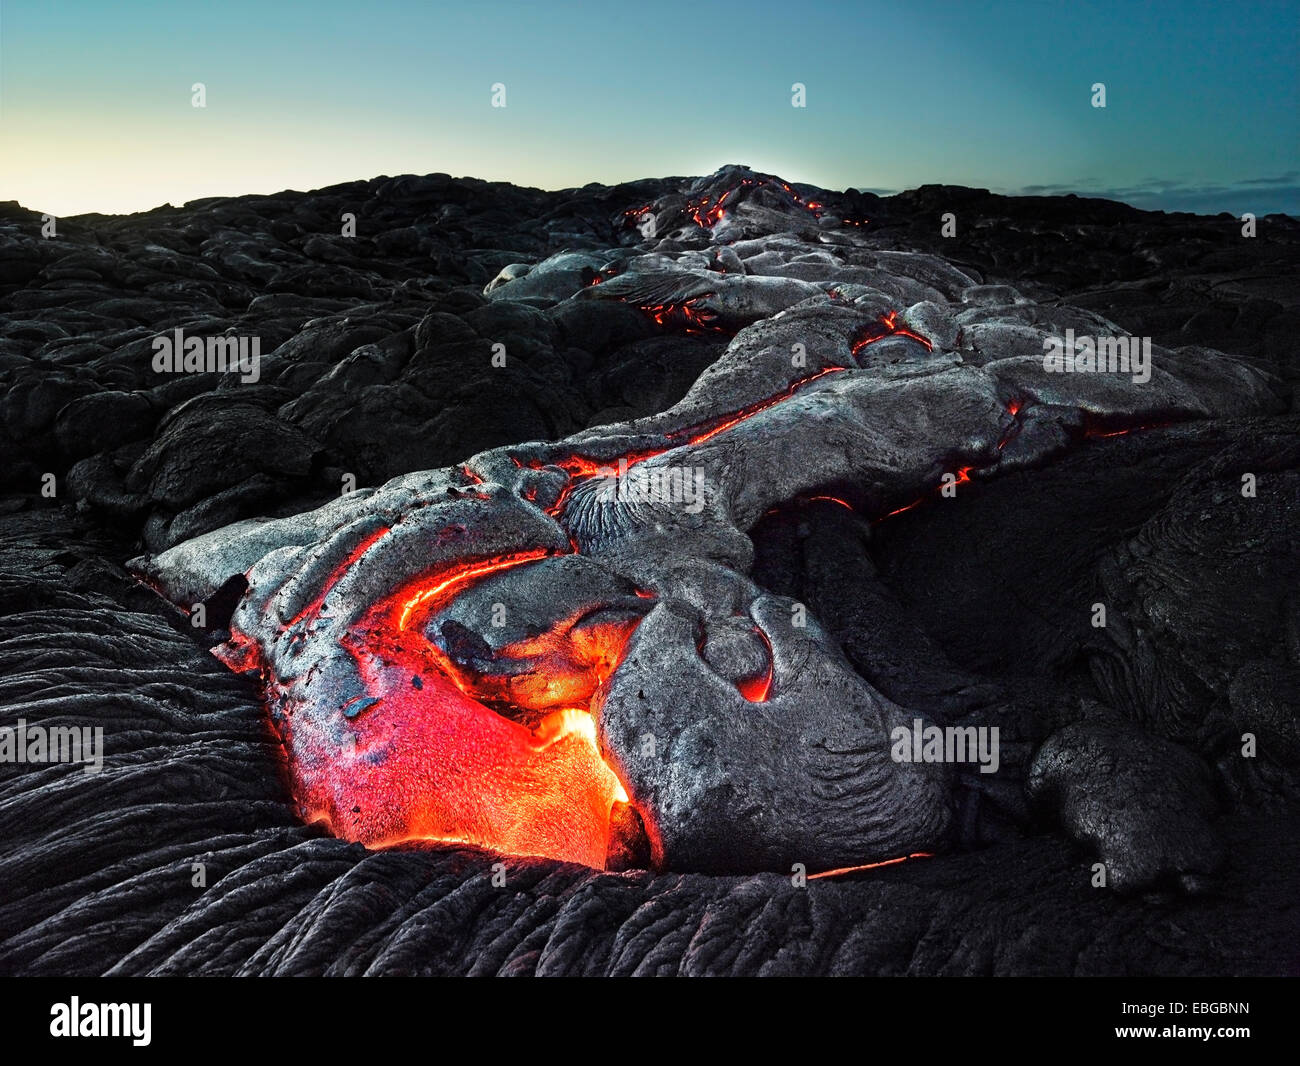 Puʻu ʻŌʻō o Puu Oo vulcano, eruzione vulcanica, lava, red hot lava, Hawaiʻi-Volcanoes-Nationalpark, USA, Hawaii Foto Stock